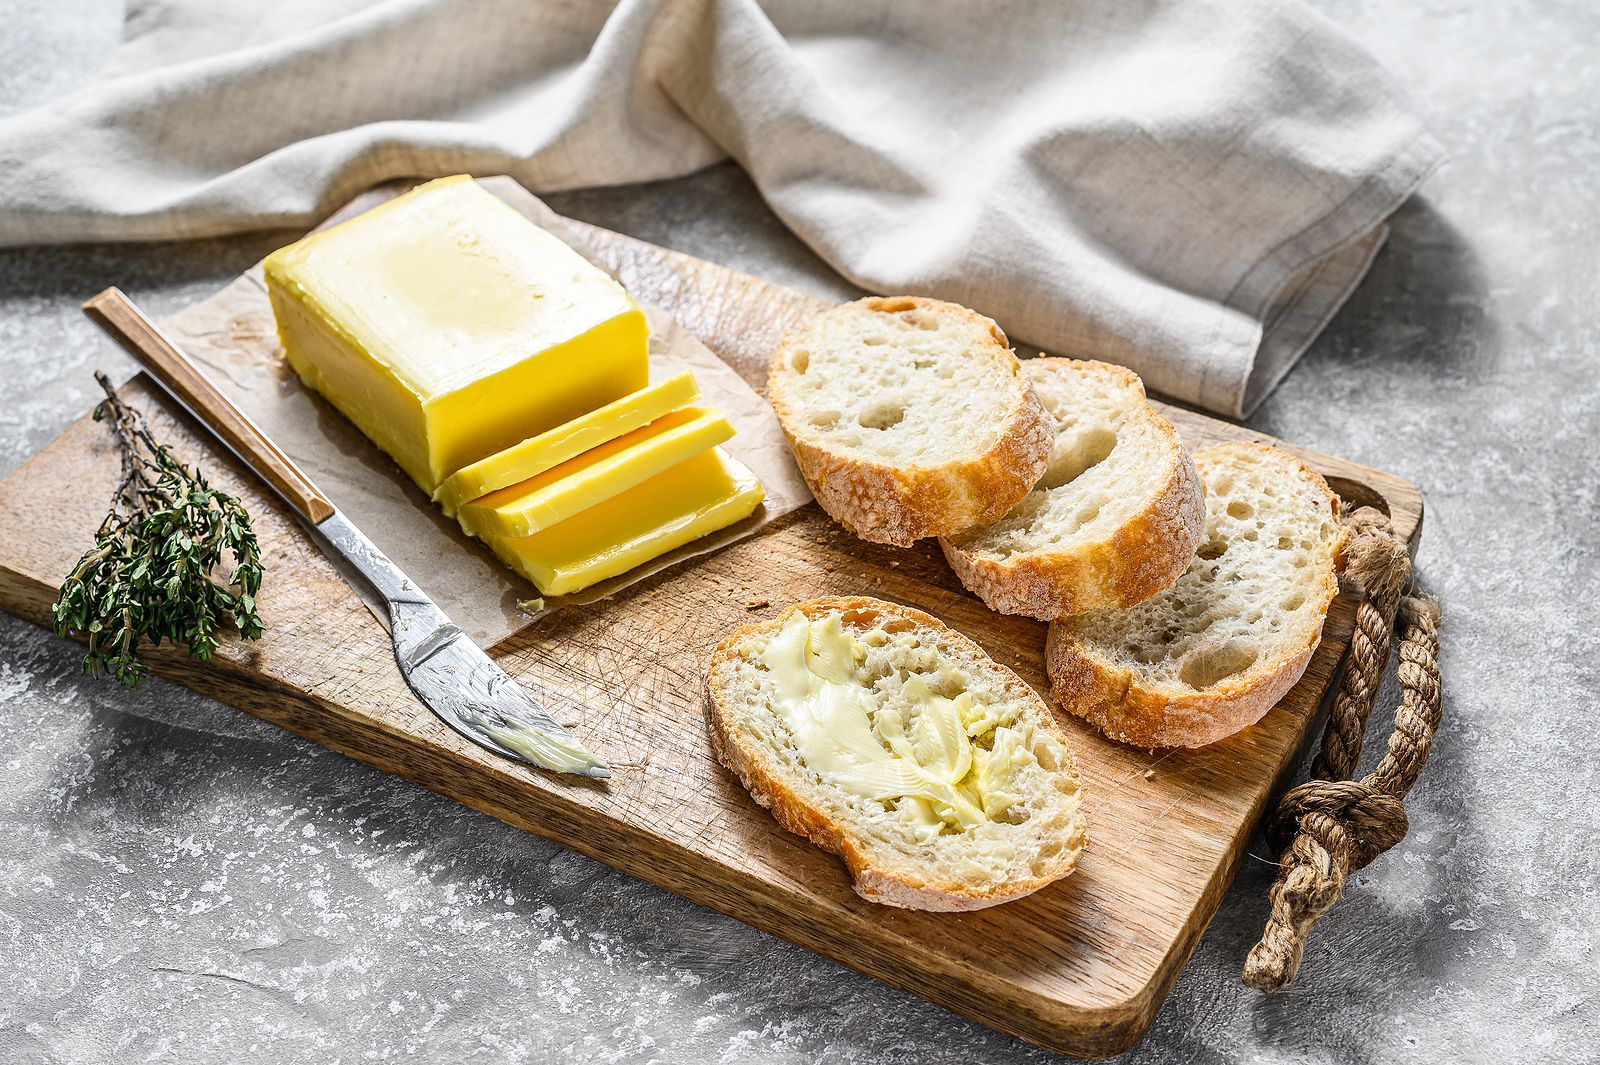 La única mantequilla "aceptable" del supermercado, según la OCU